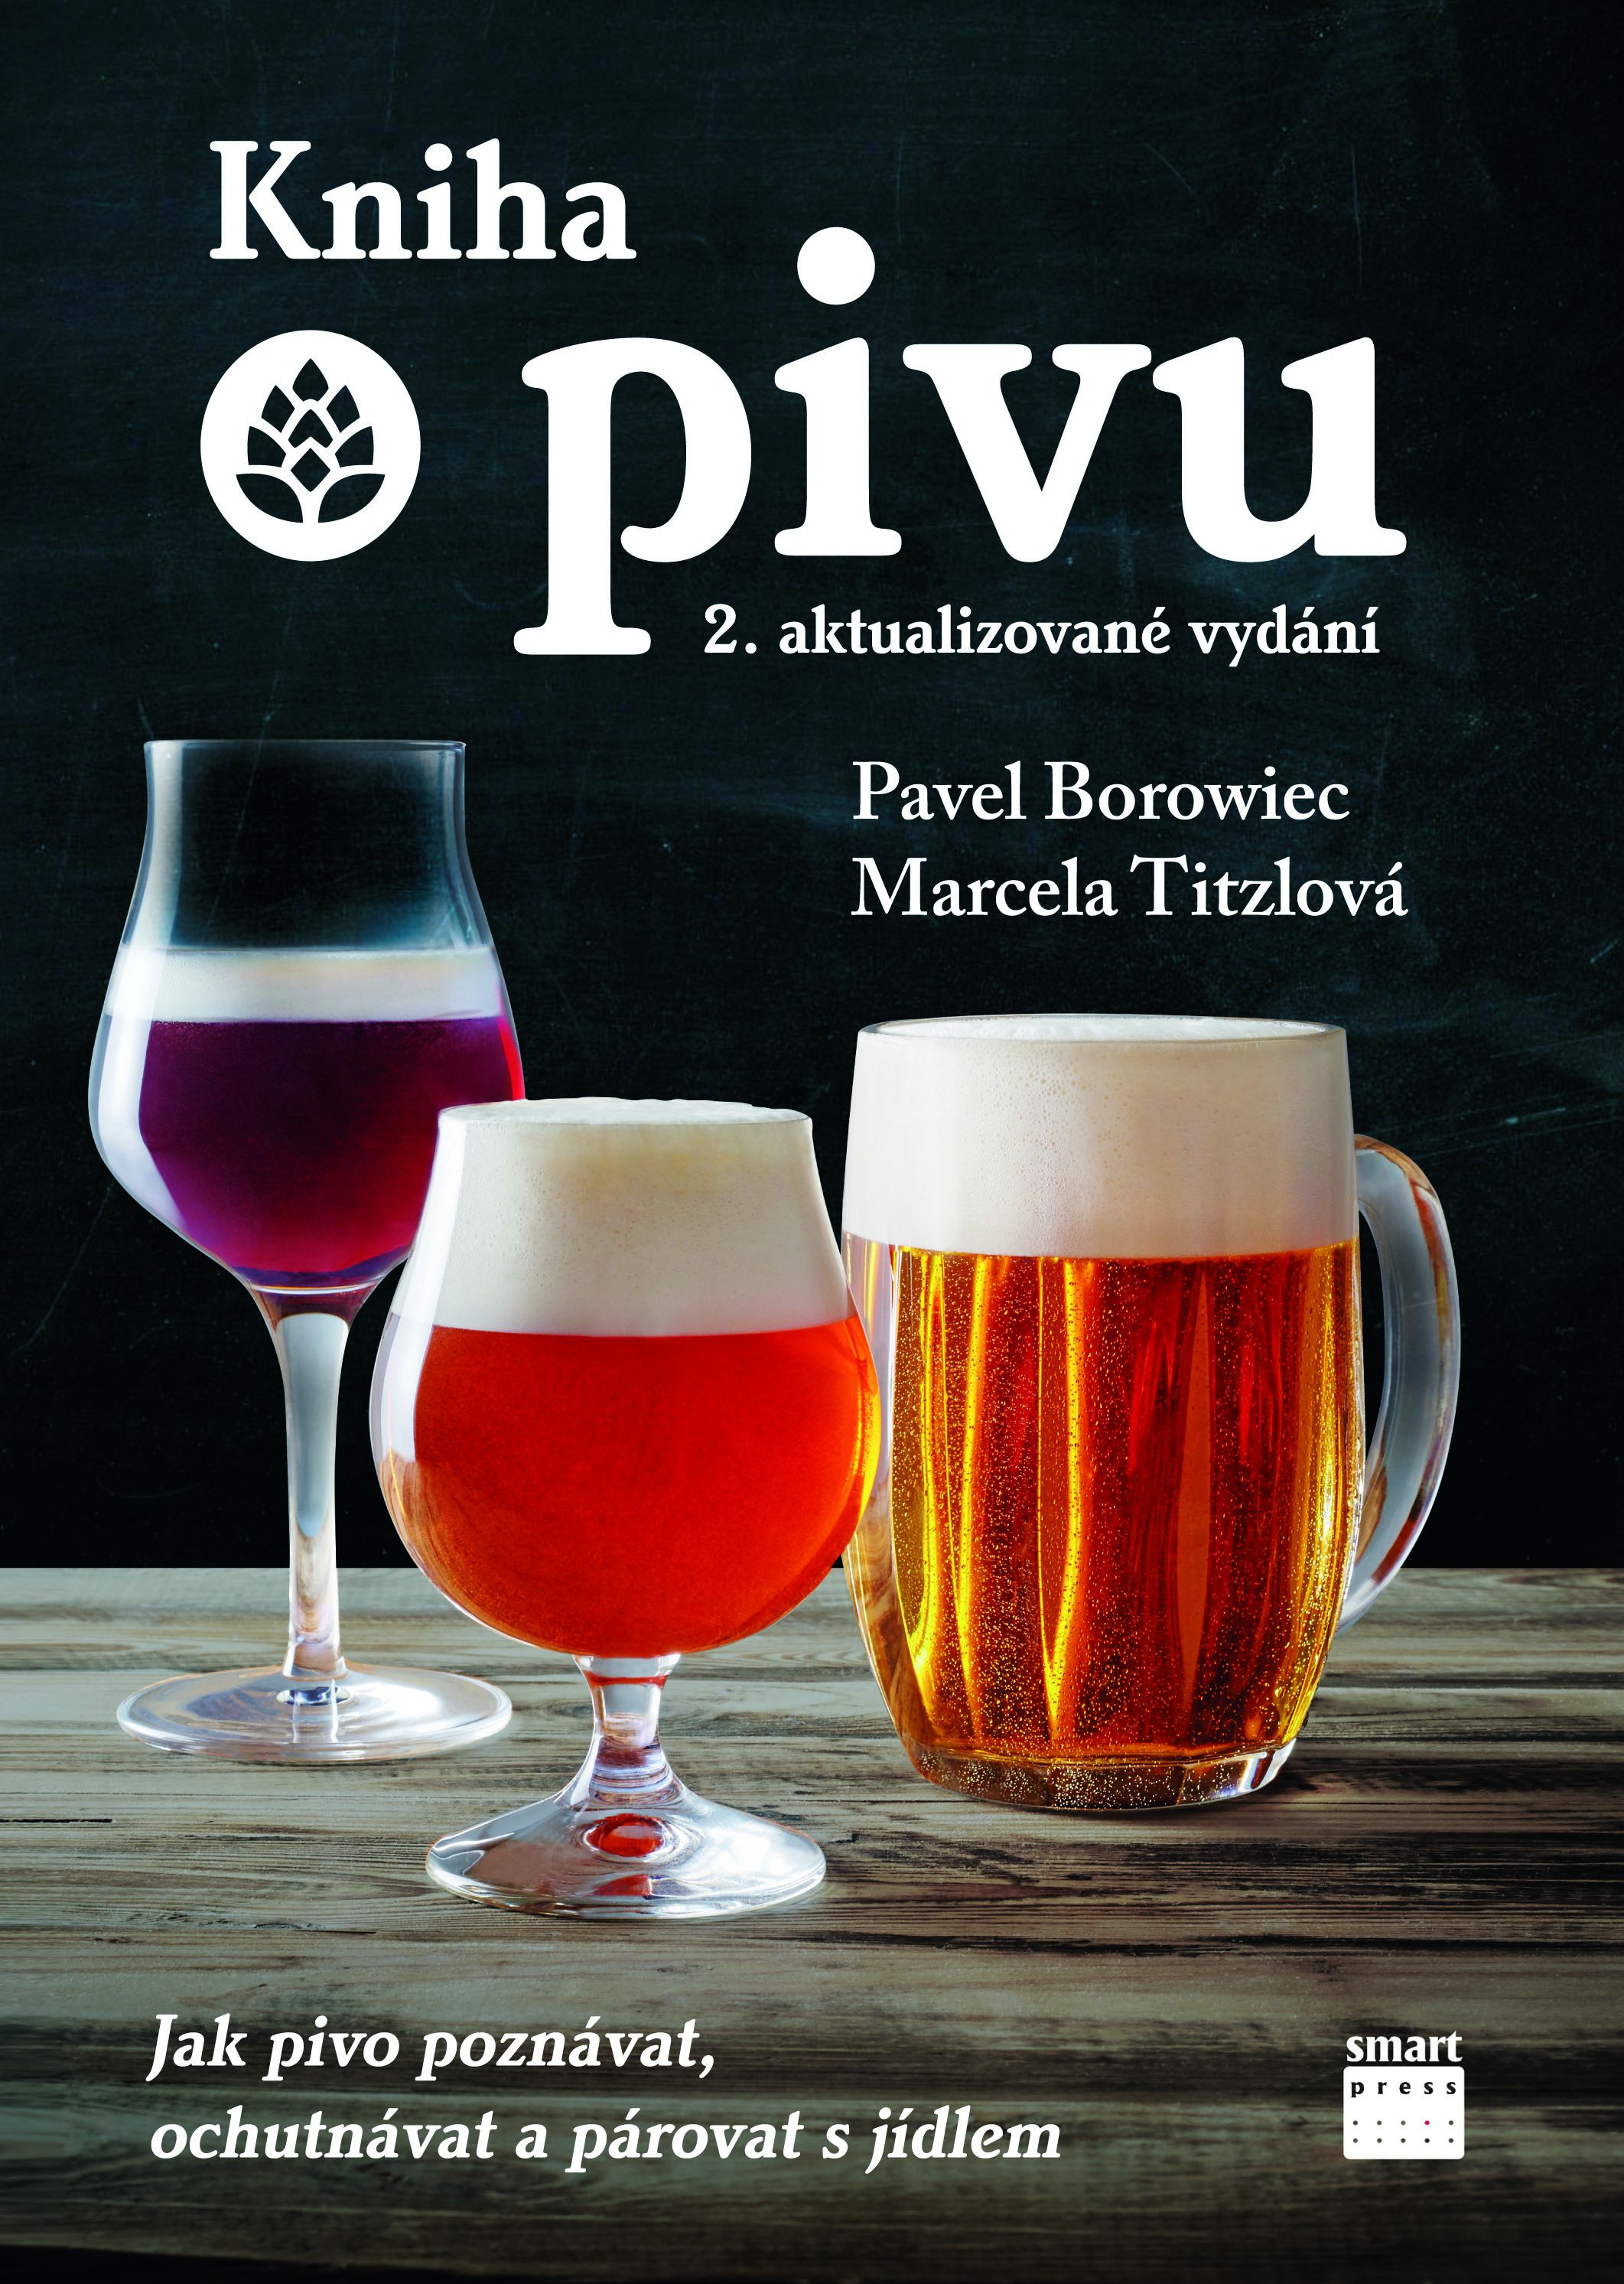 Kniha o pivu (2. aktualizované vydání)